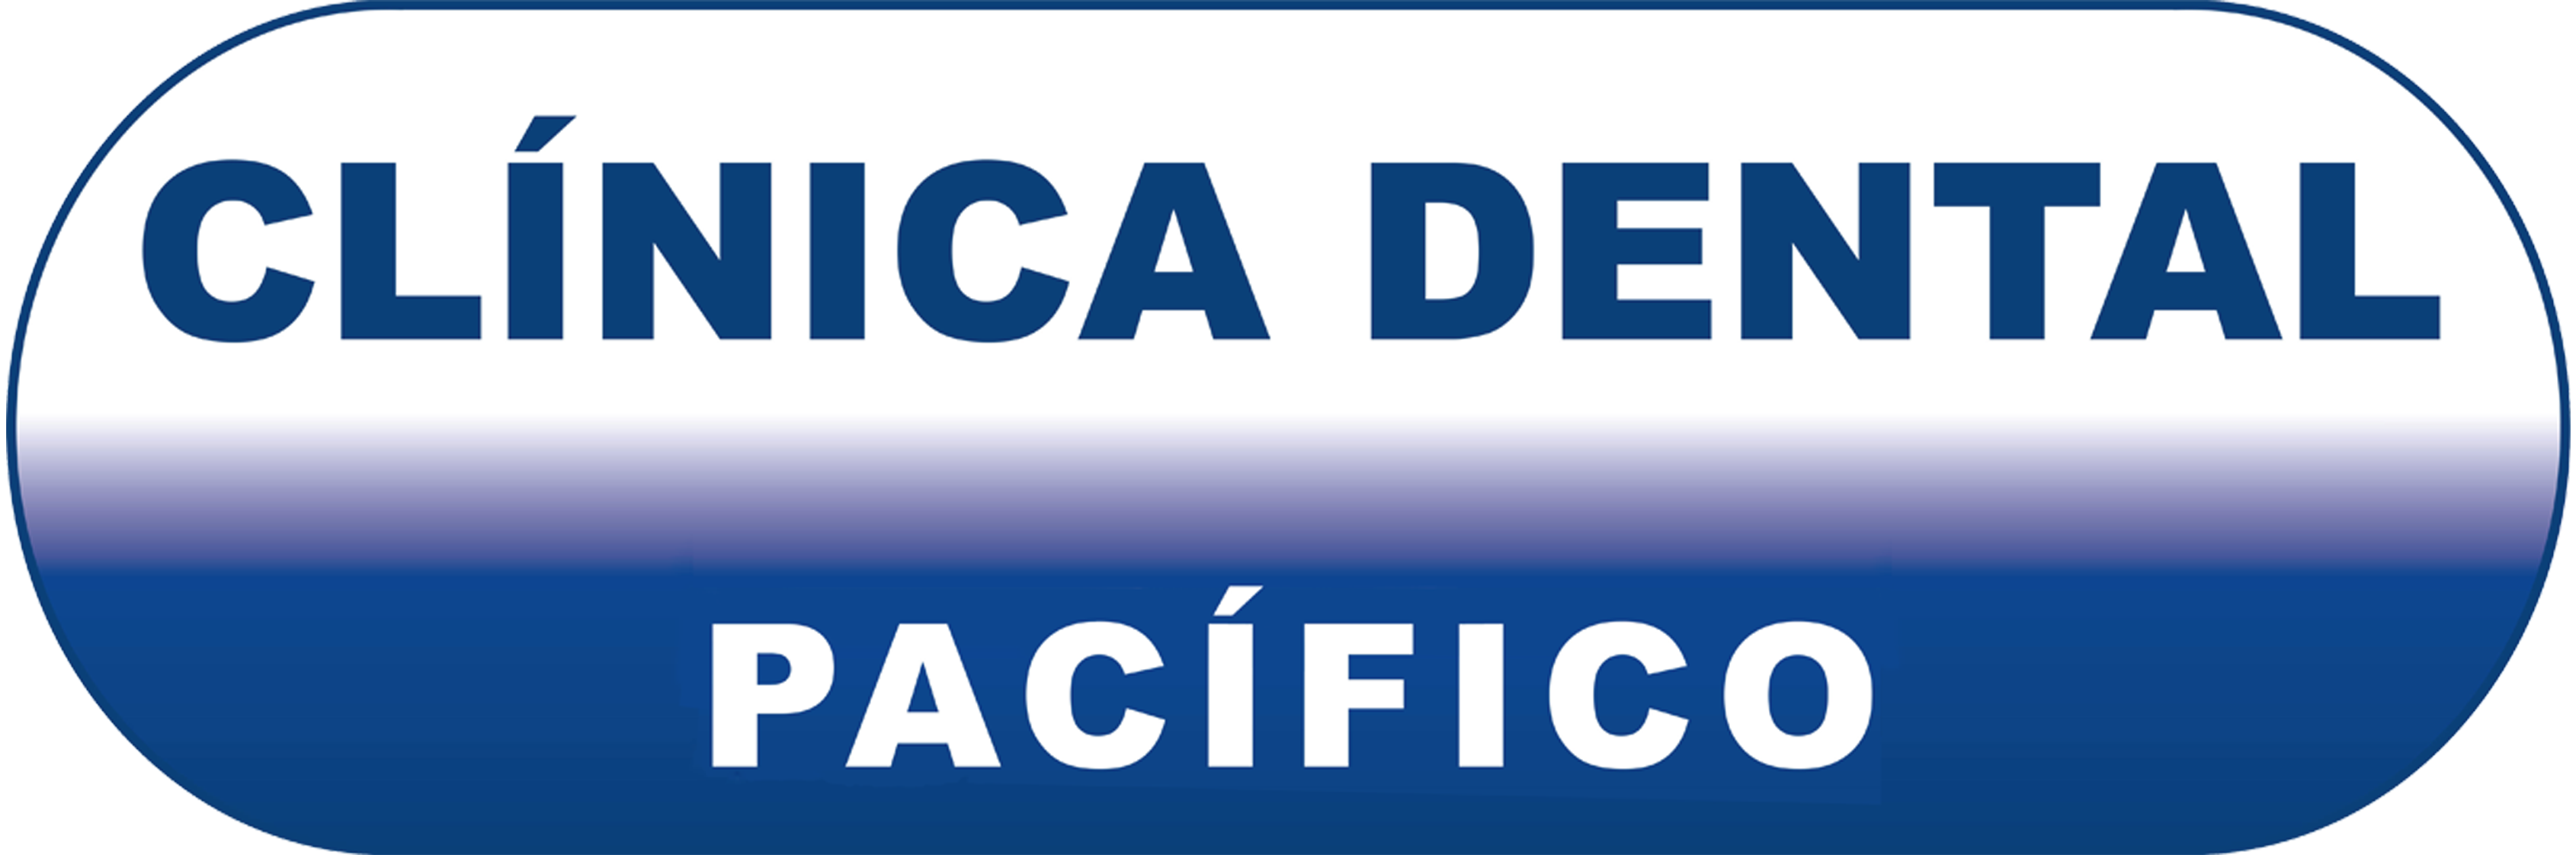 agenciadeempleossantiago_clinicadentalpacifico